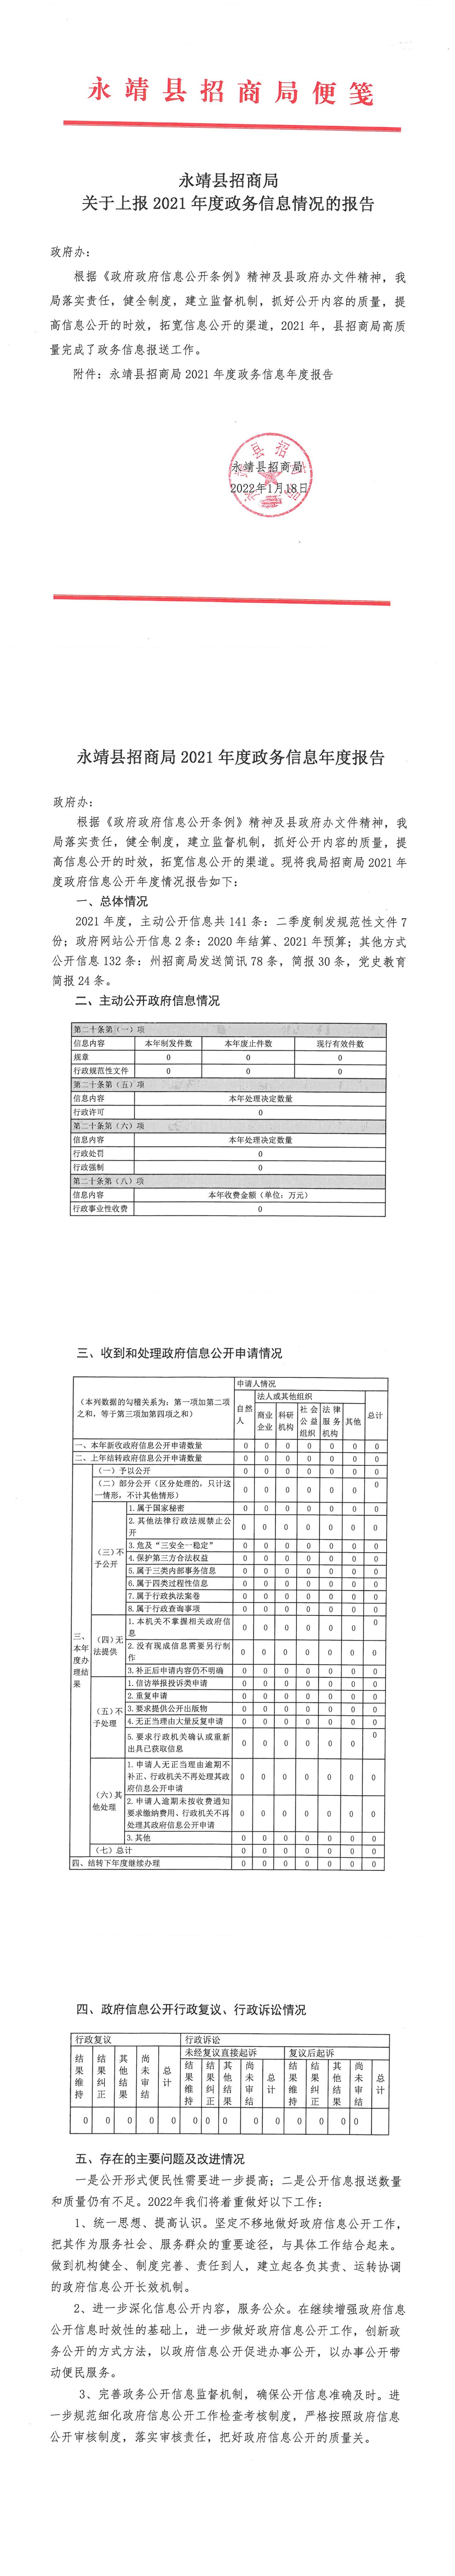 2021年度县招商局政府信息公开工作报告.jpg